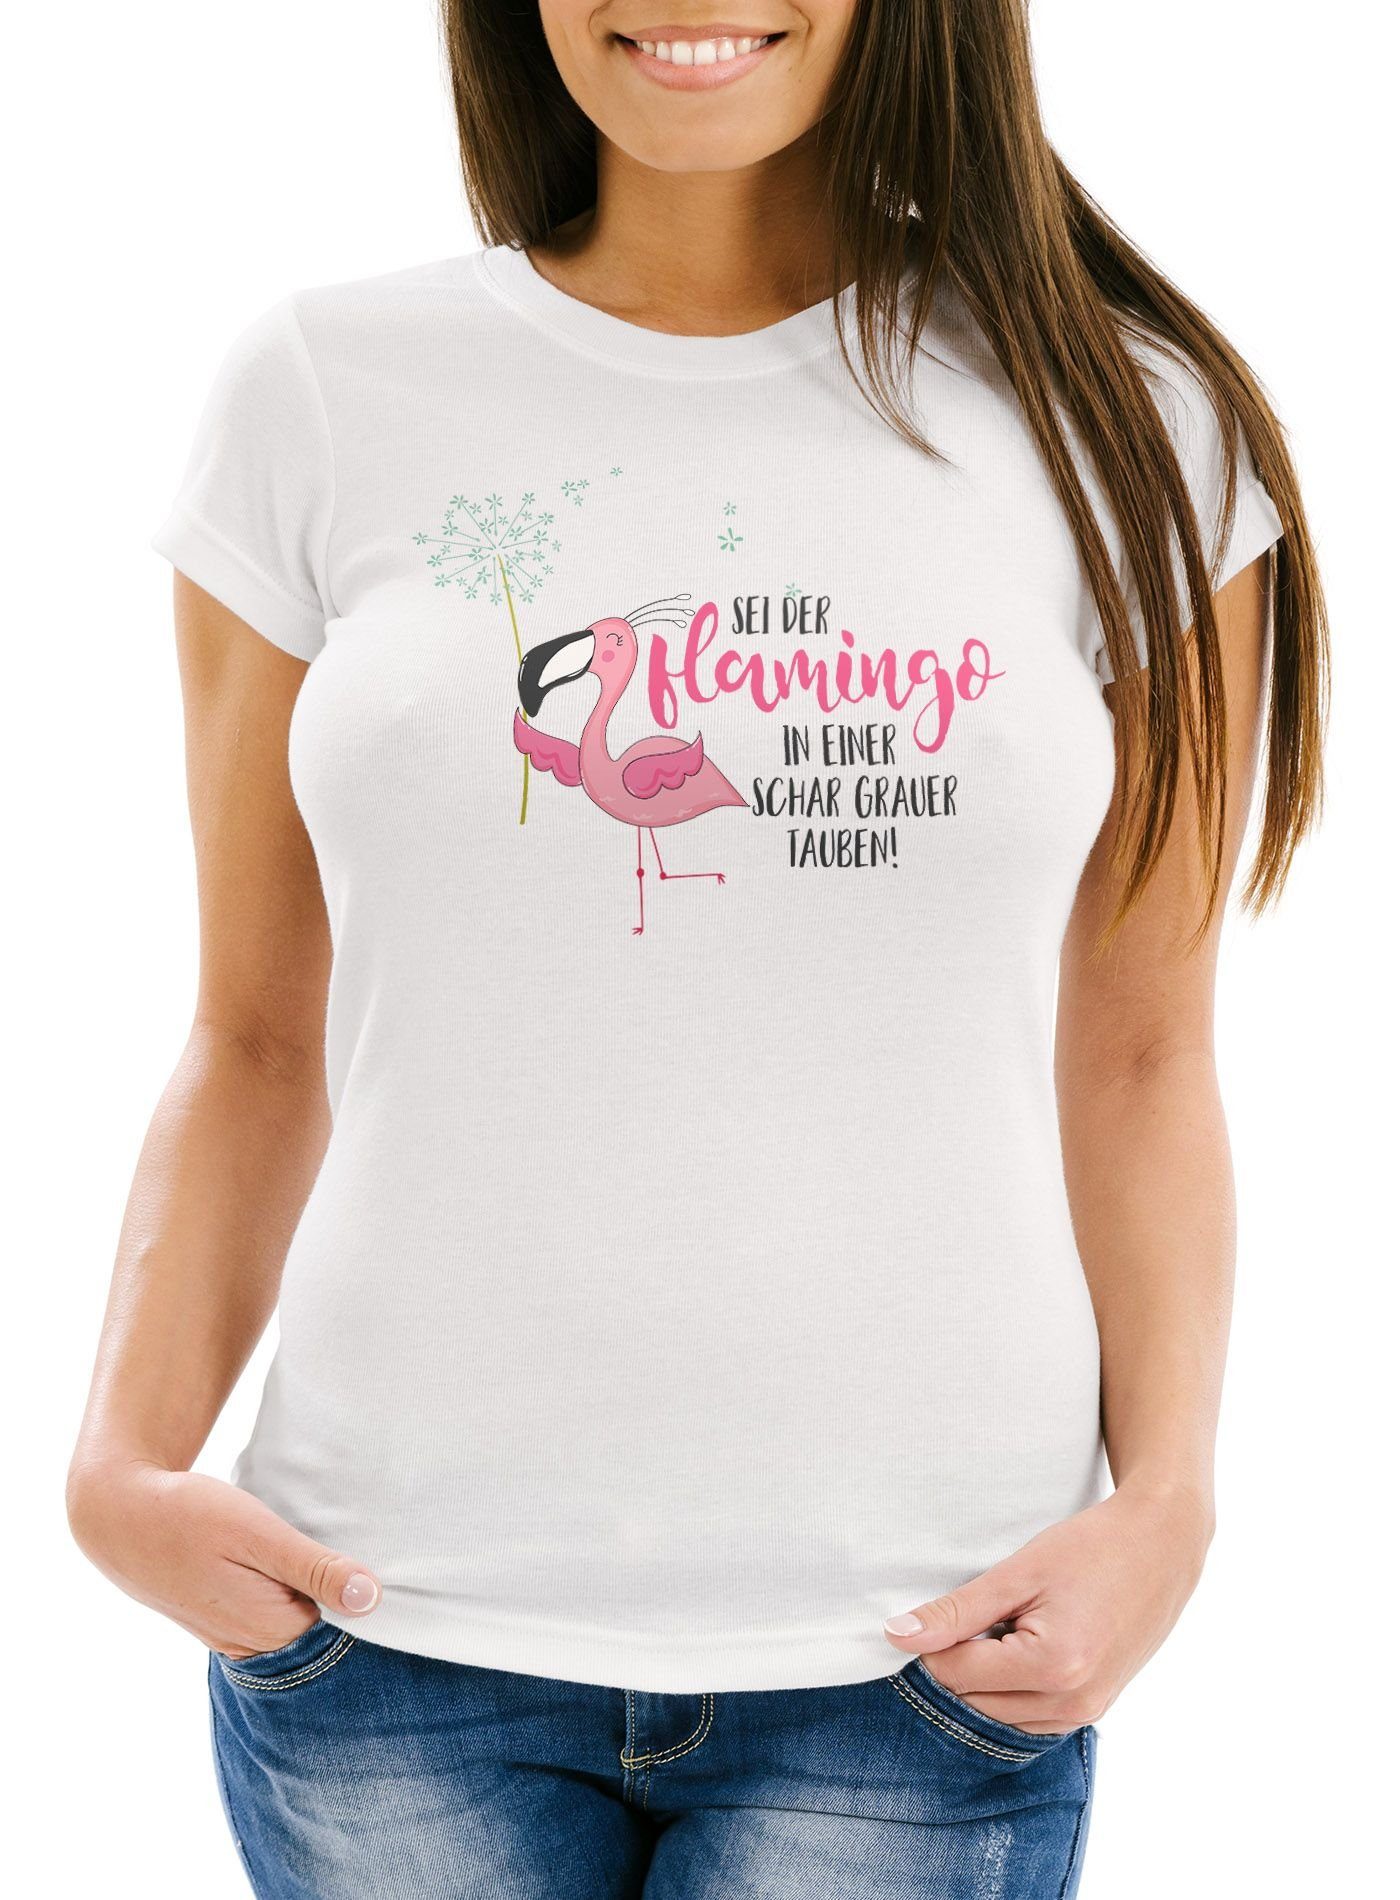 MoonWorks Print-Shirt Damen T-Shirt sei der Flamingo in einer Schar grauer Tauben Slim Fit Spruch Flamingo Pusteblume Moonworks® mit Print weiß